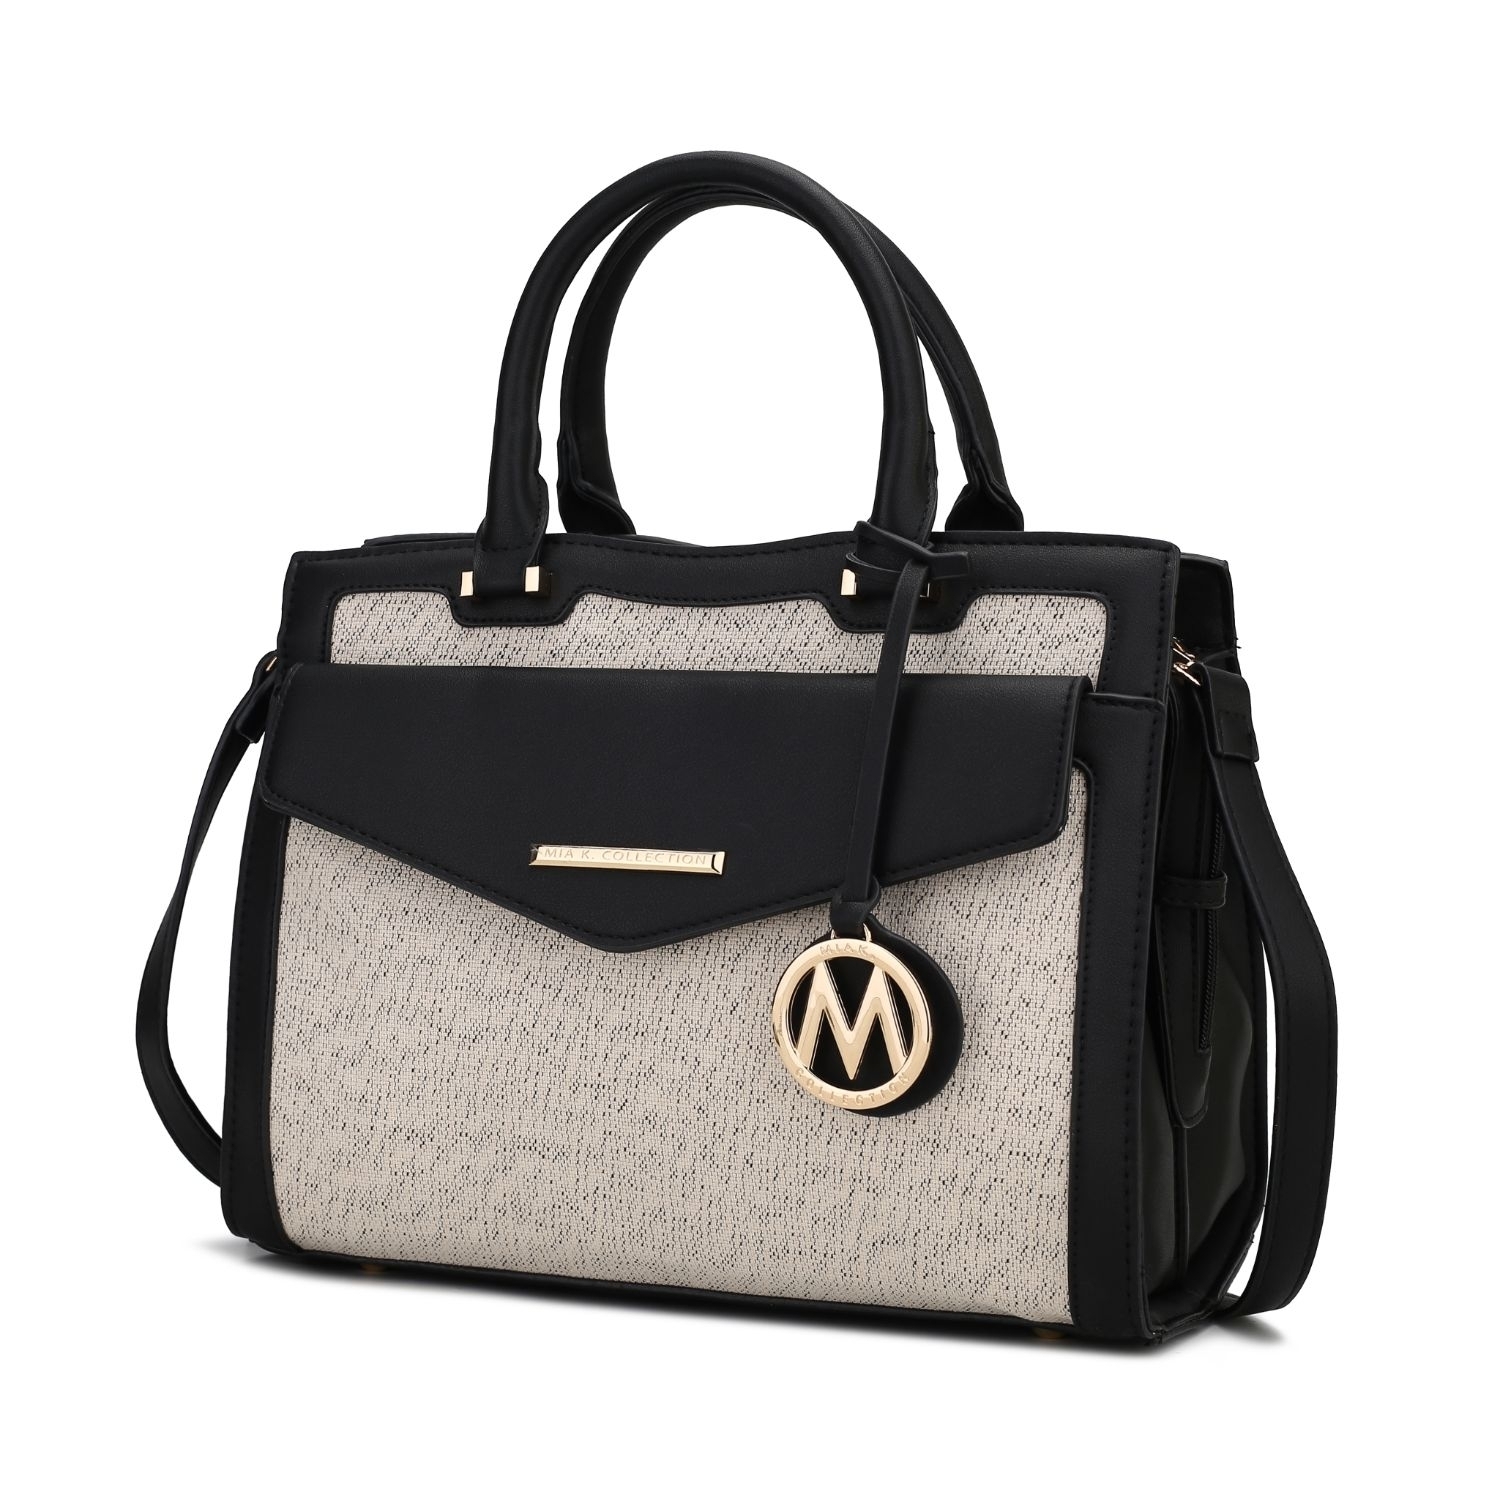 MKF Collection Alyssa Satchel Handbag By Mia K. - Cognac